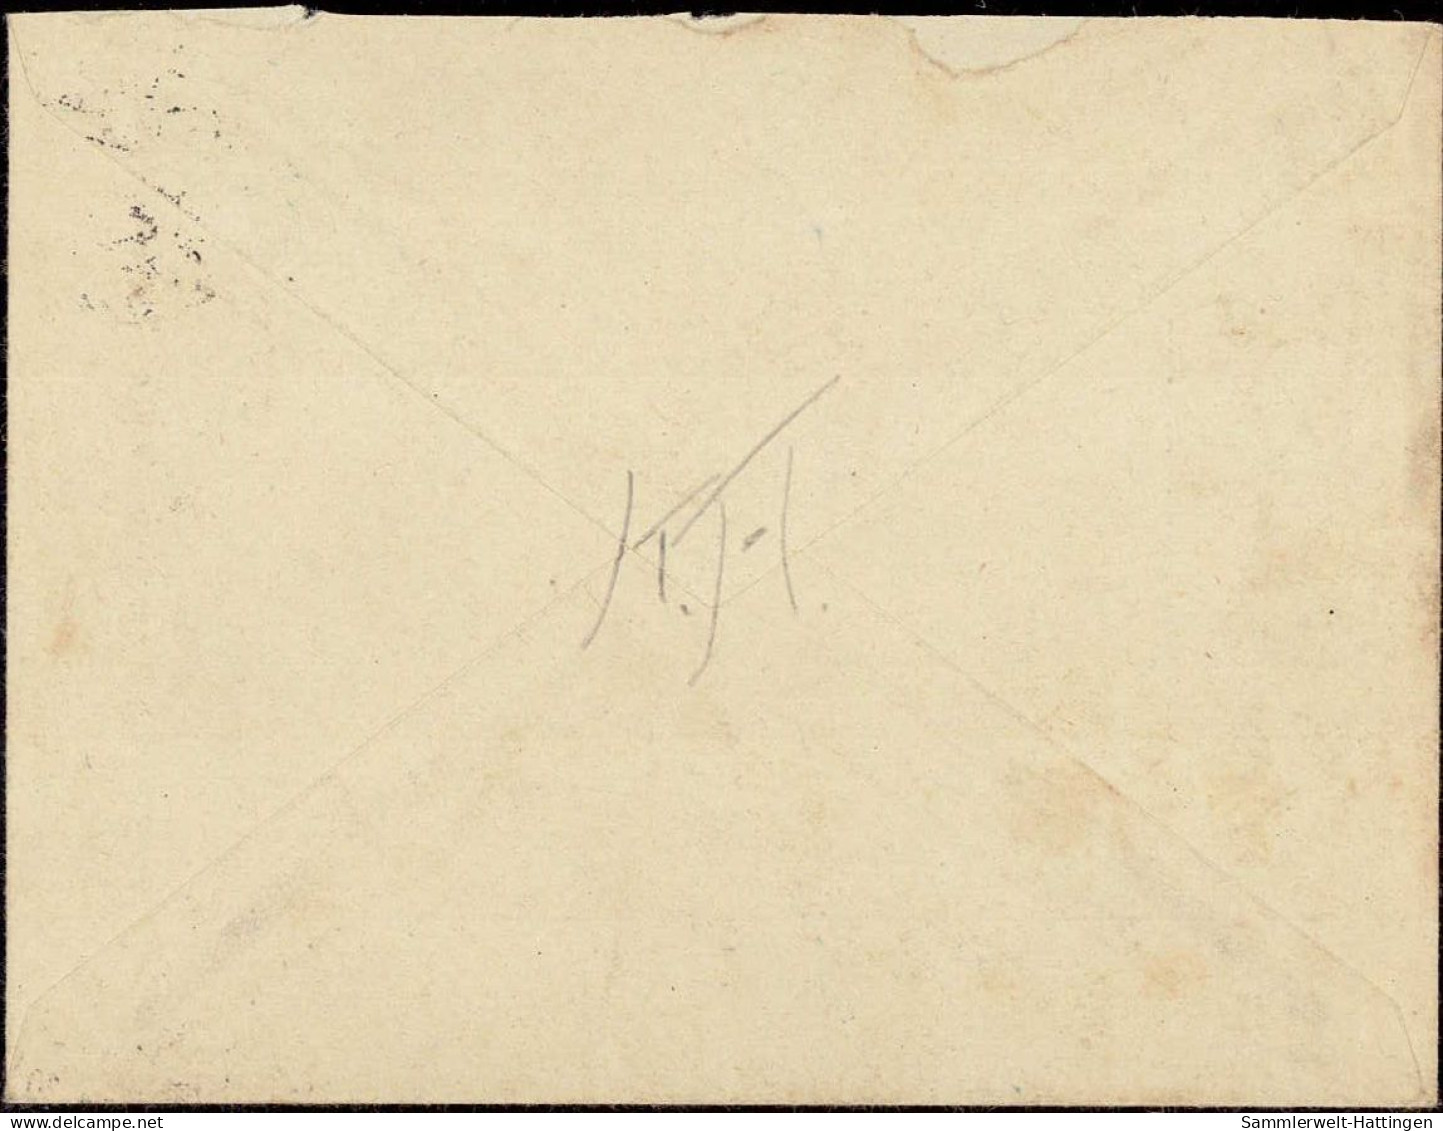 604298 | Brief, 1944; Aus Dem RAD Lager Altkehdingen über Basbeck, Posthilfsstelle Westerhamm Mit (24) PLZ | Hemmoor (W - Omslagen